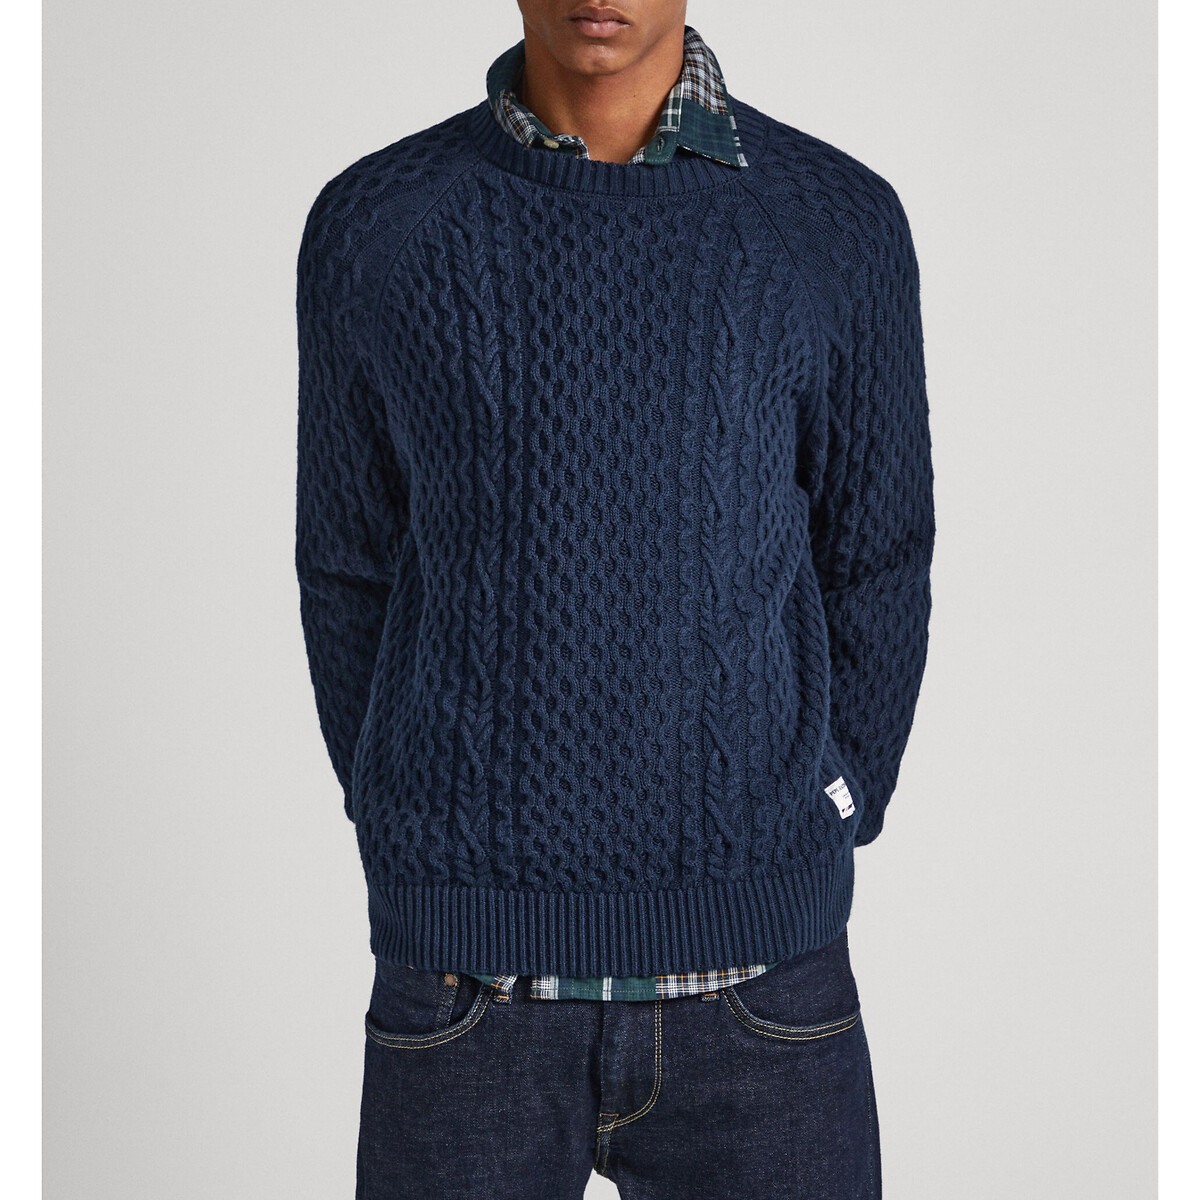 Пуловер с круглым вырезом из текстурированного трикотажа XXL синий